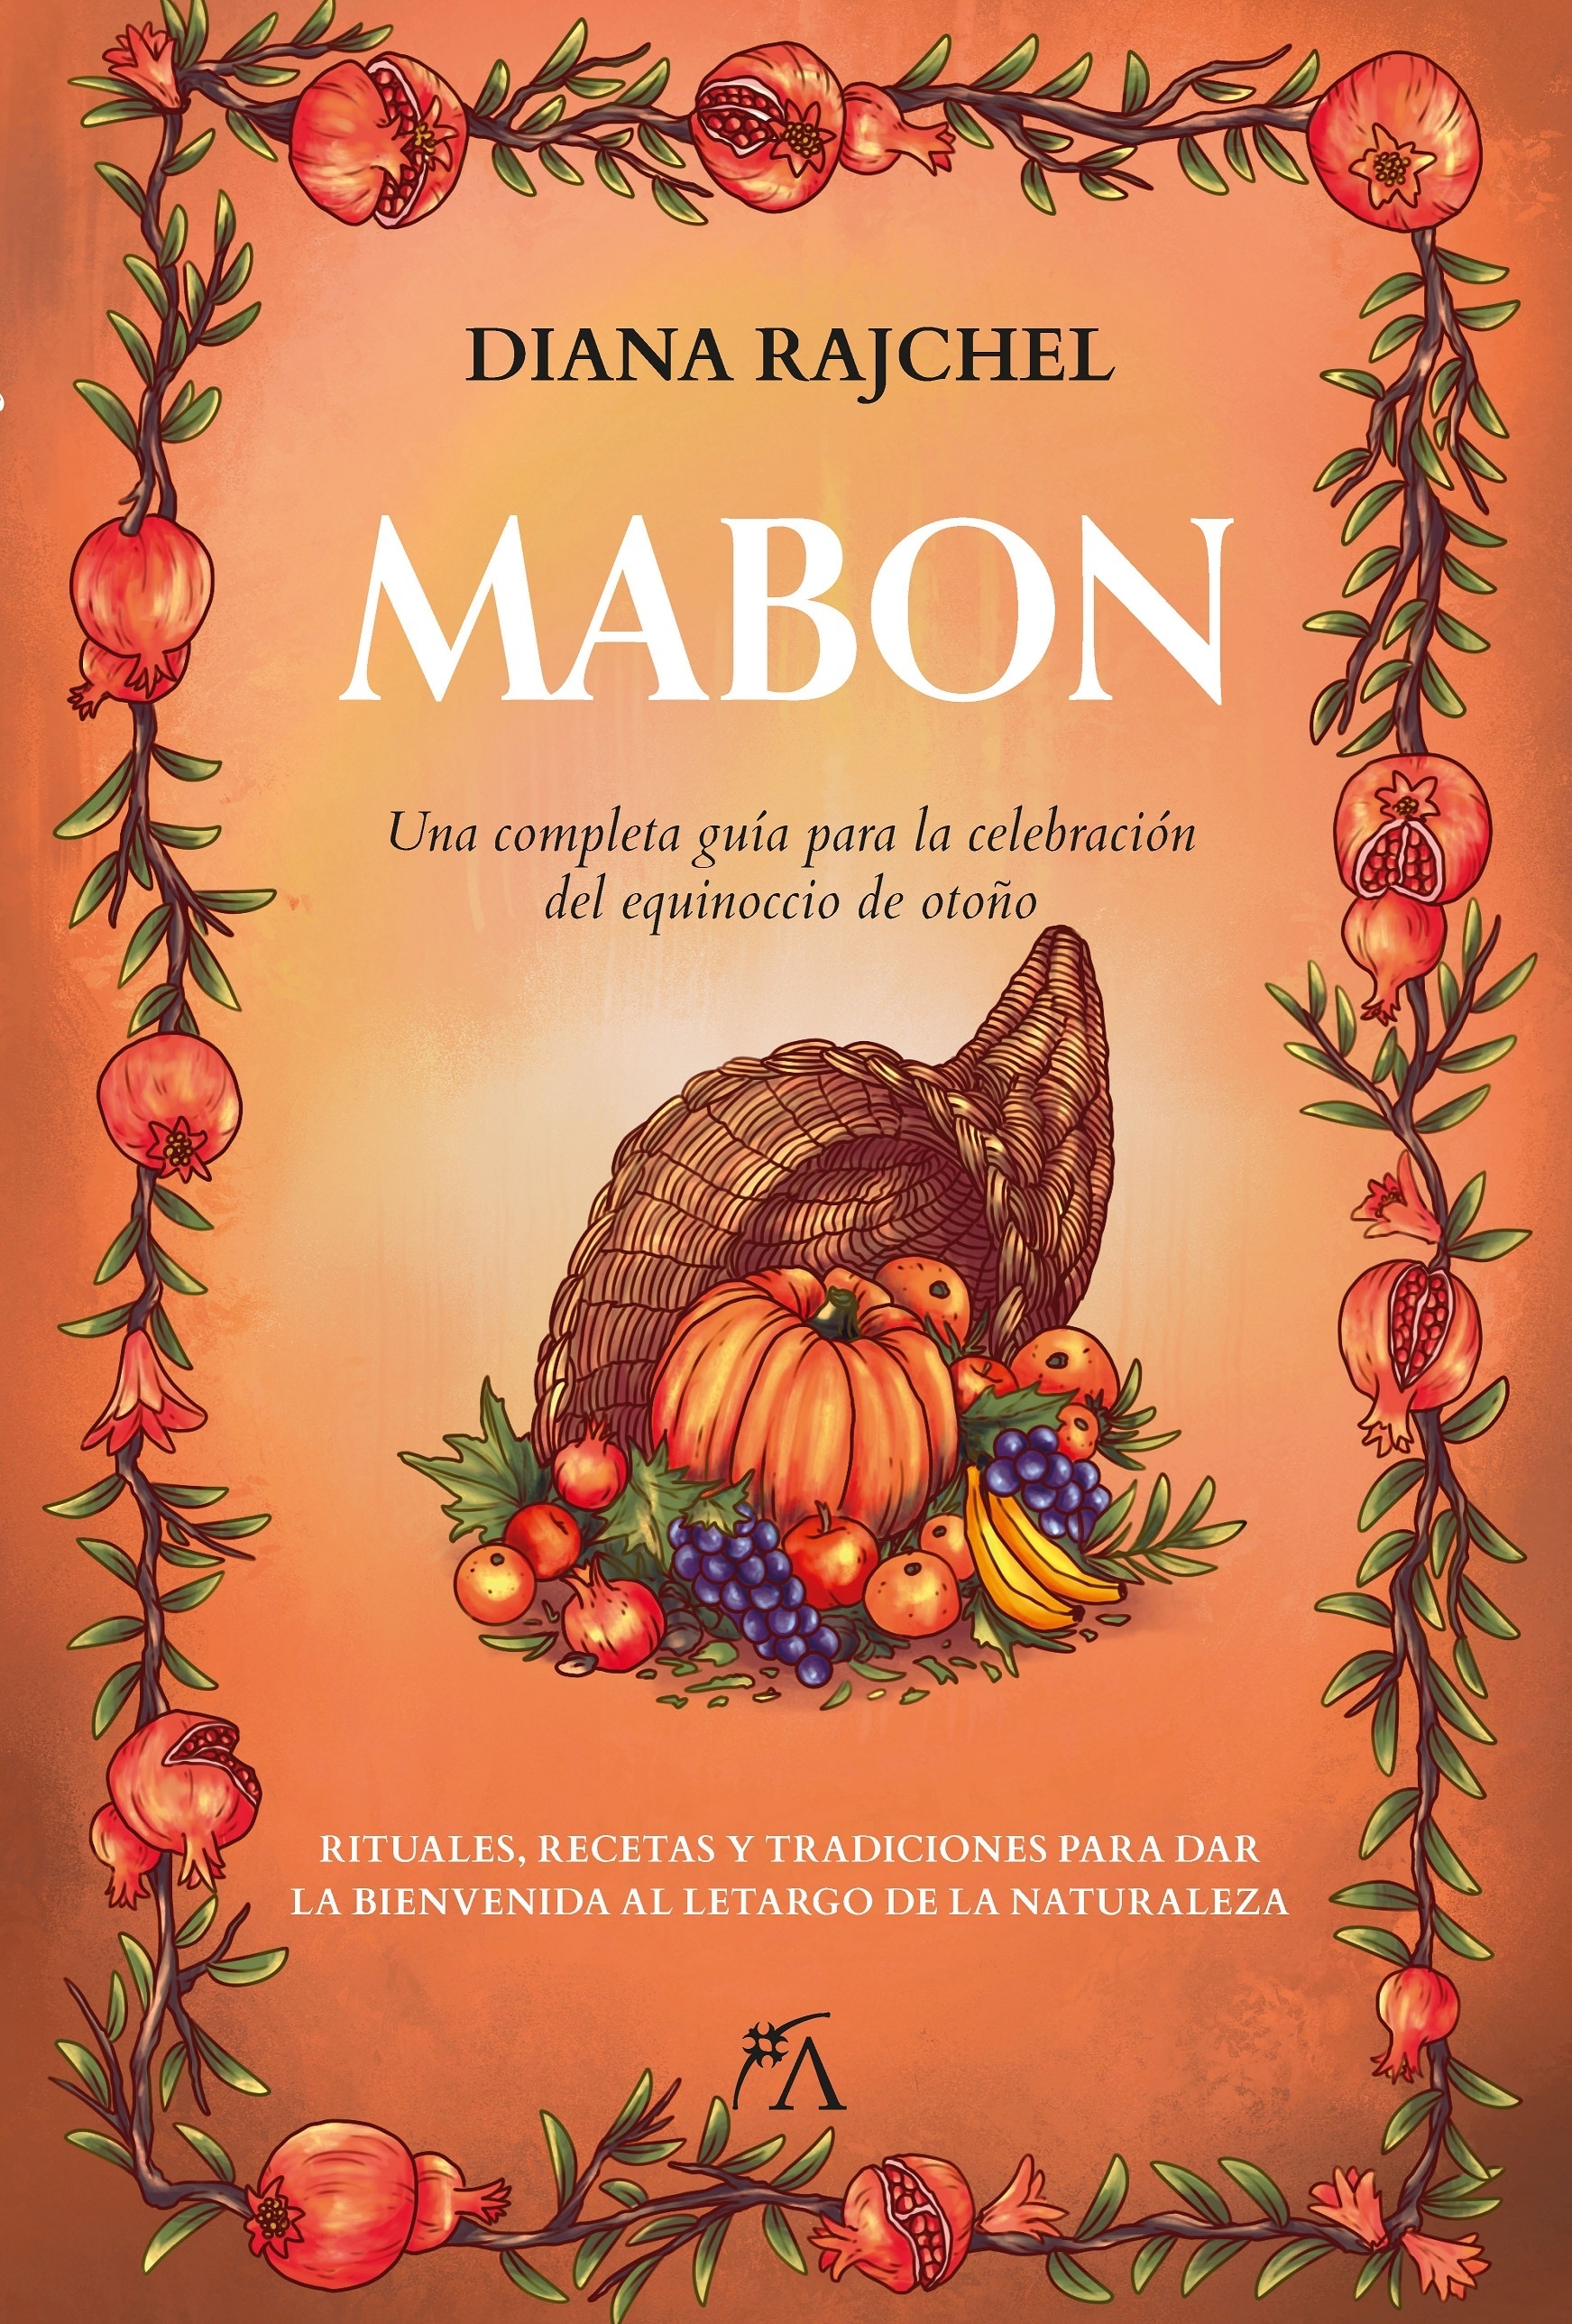 Mabon "Una completa guía para la celebración del equinoccio de otoño"